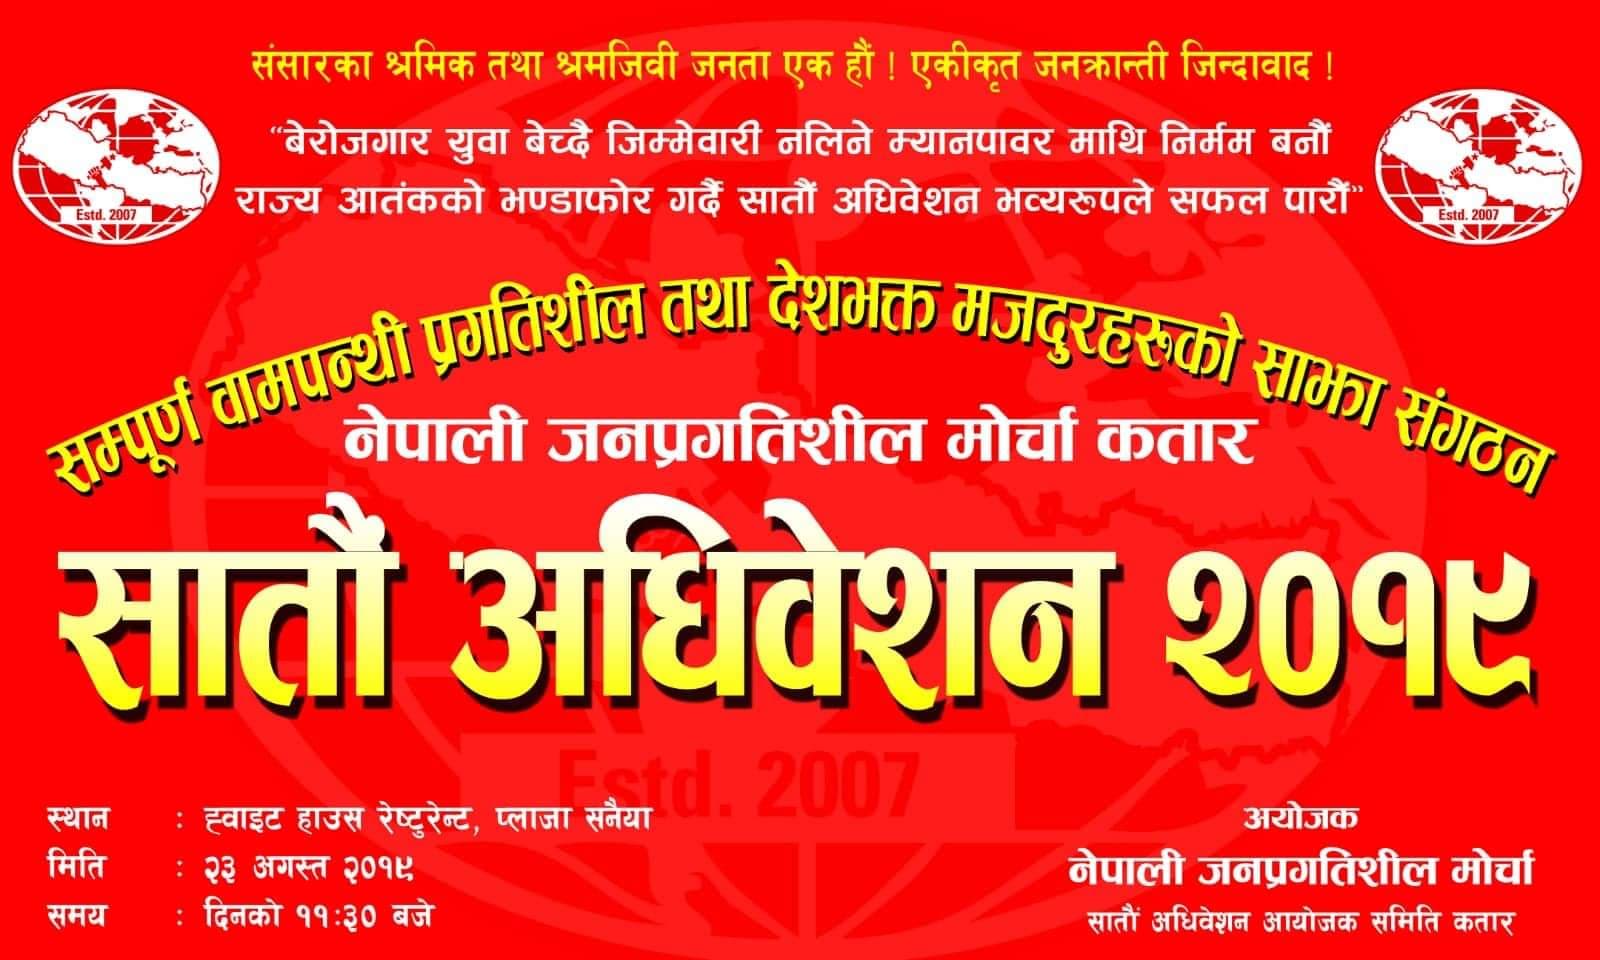 नेकपा निकट नेपाली जनप्रगतिशील मोर्चा कतारले अगस्तमा सातौं अधिवेशन आयोजना गर्दै